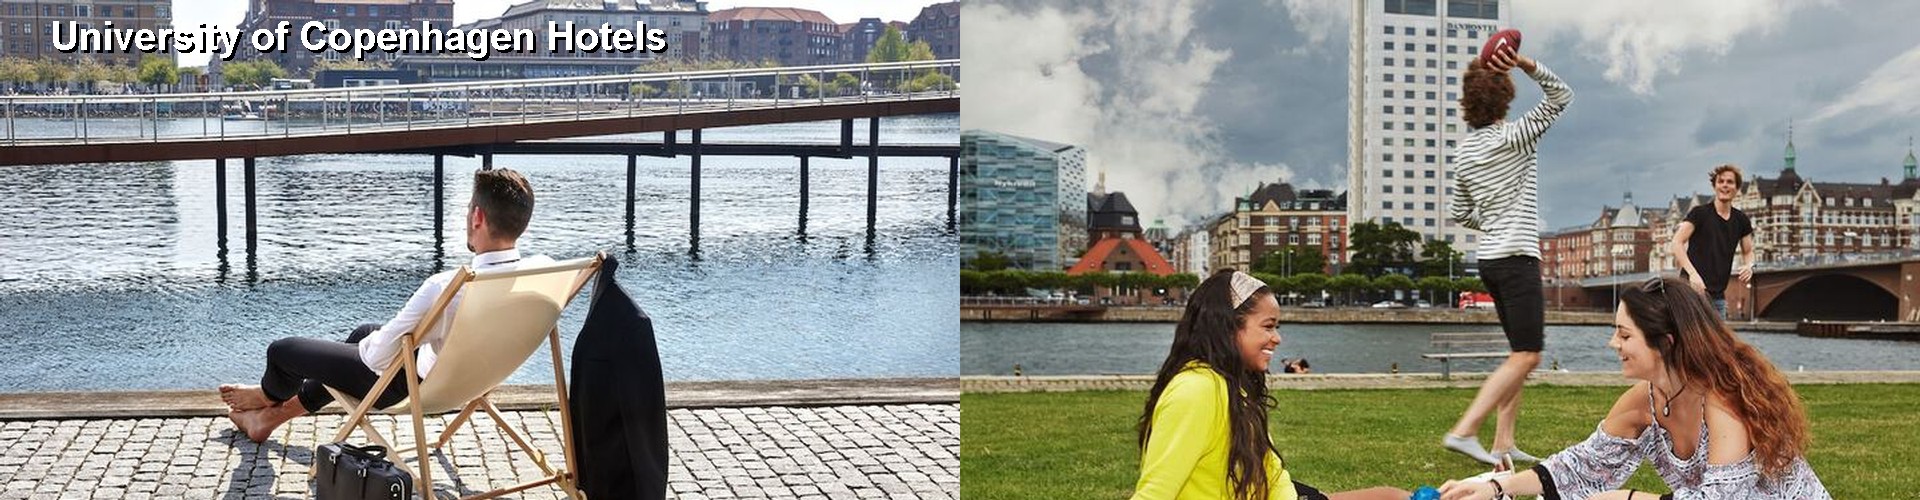 5 Best Hotels near University of Copenhagen